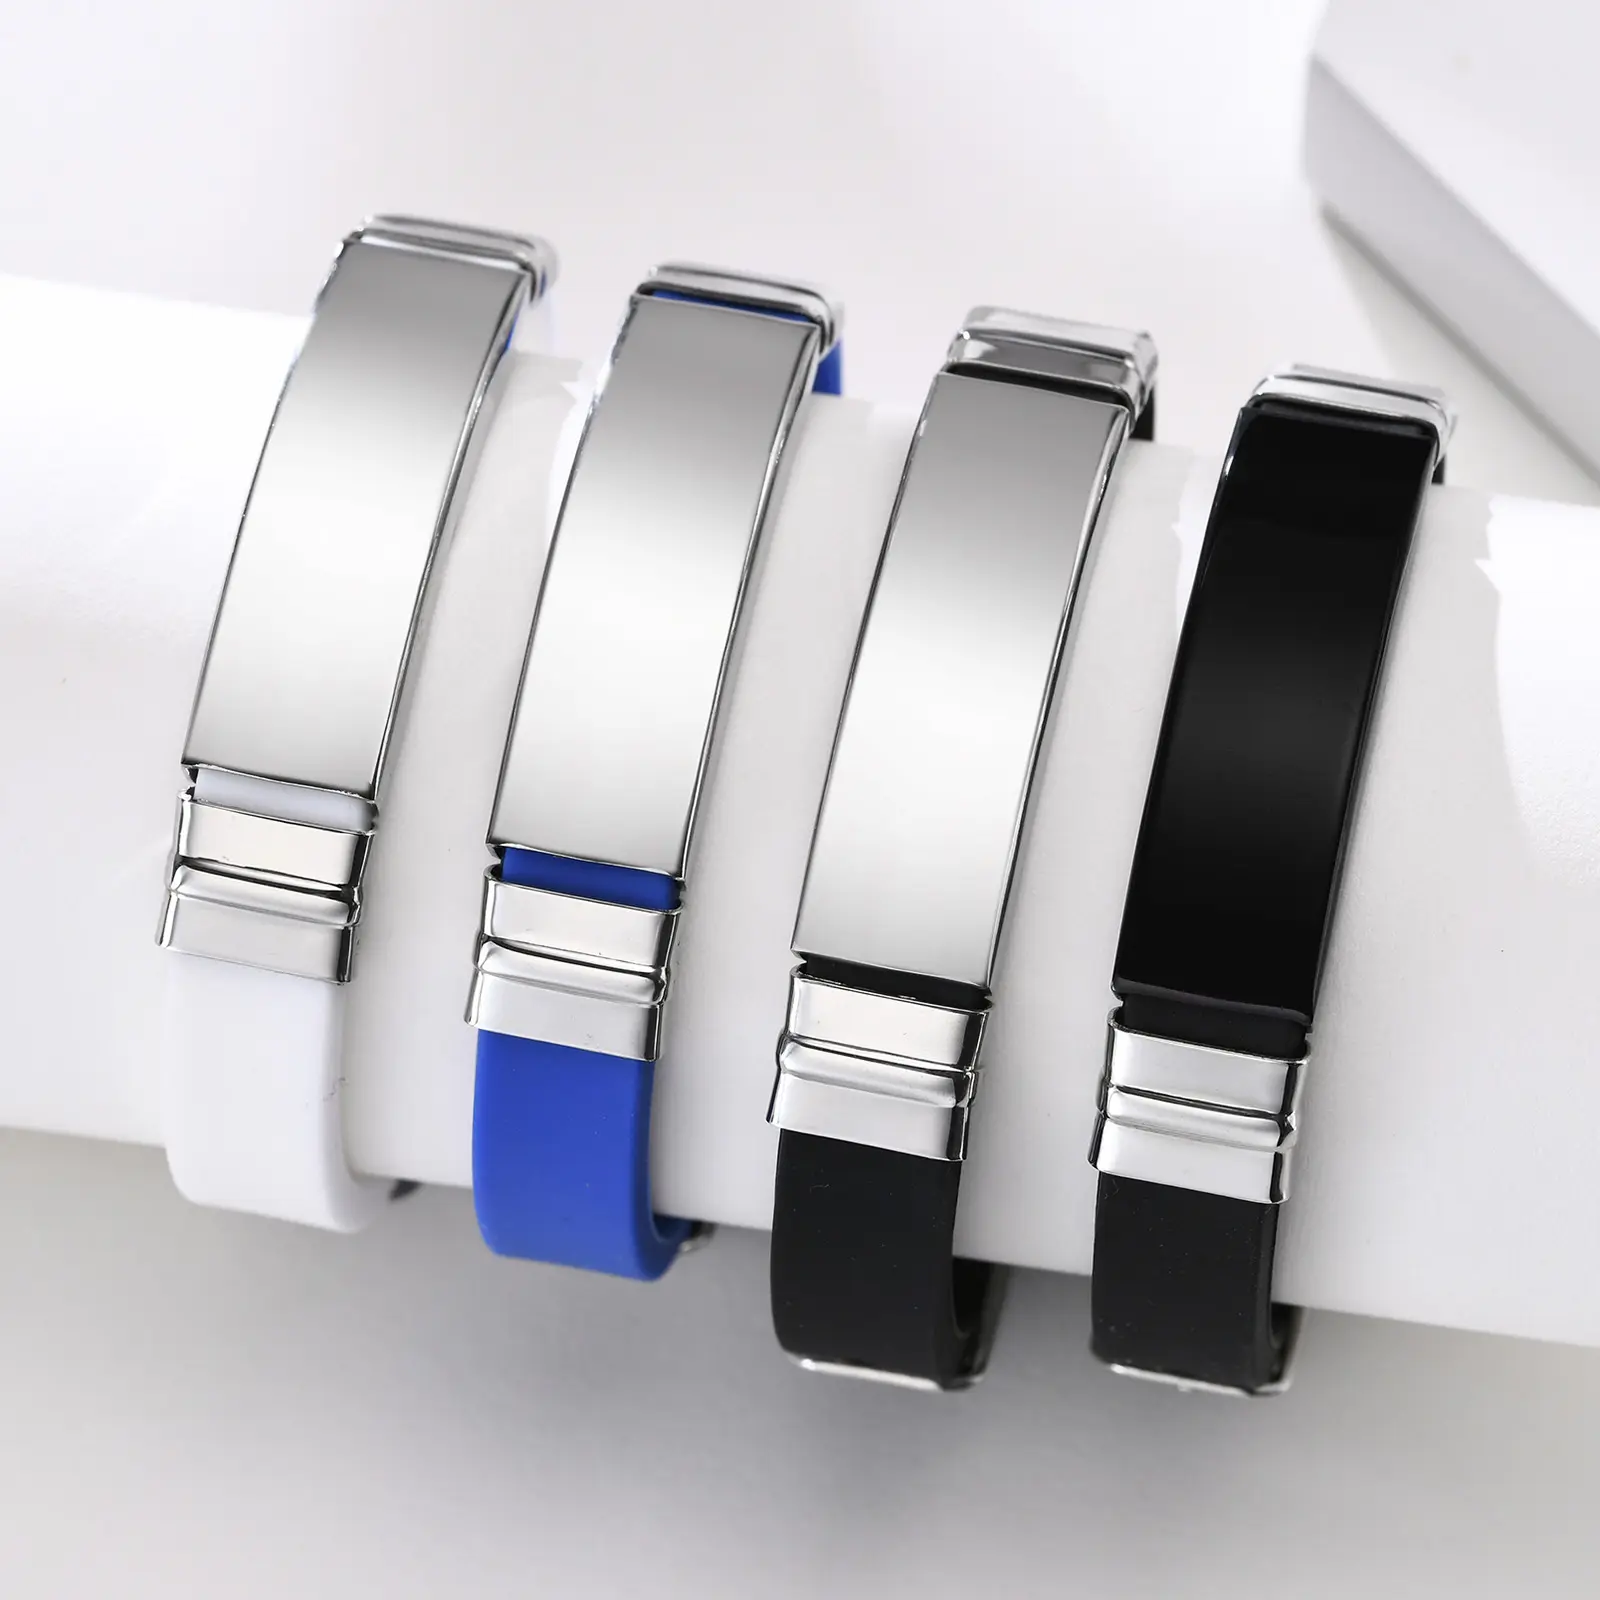 Pulseira de silicone aço inoxidável, nova pulseira personalizada de silicone com letras a laser personalizadas